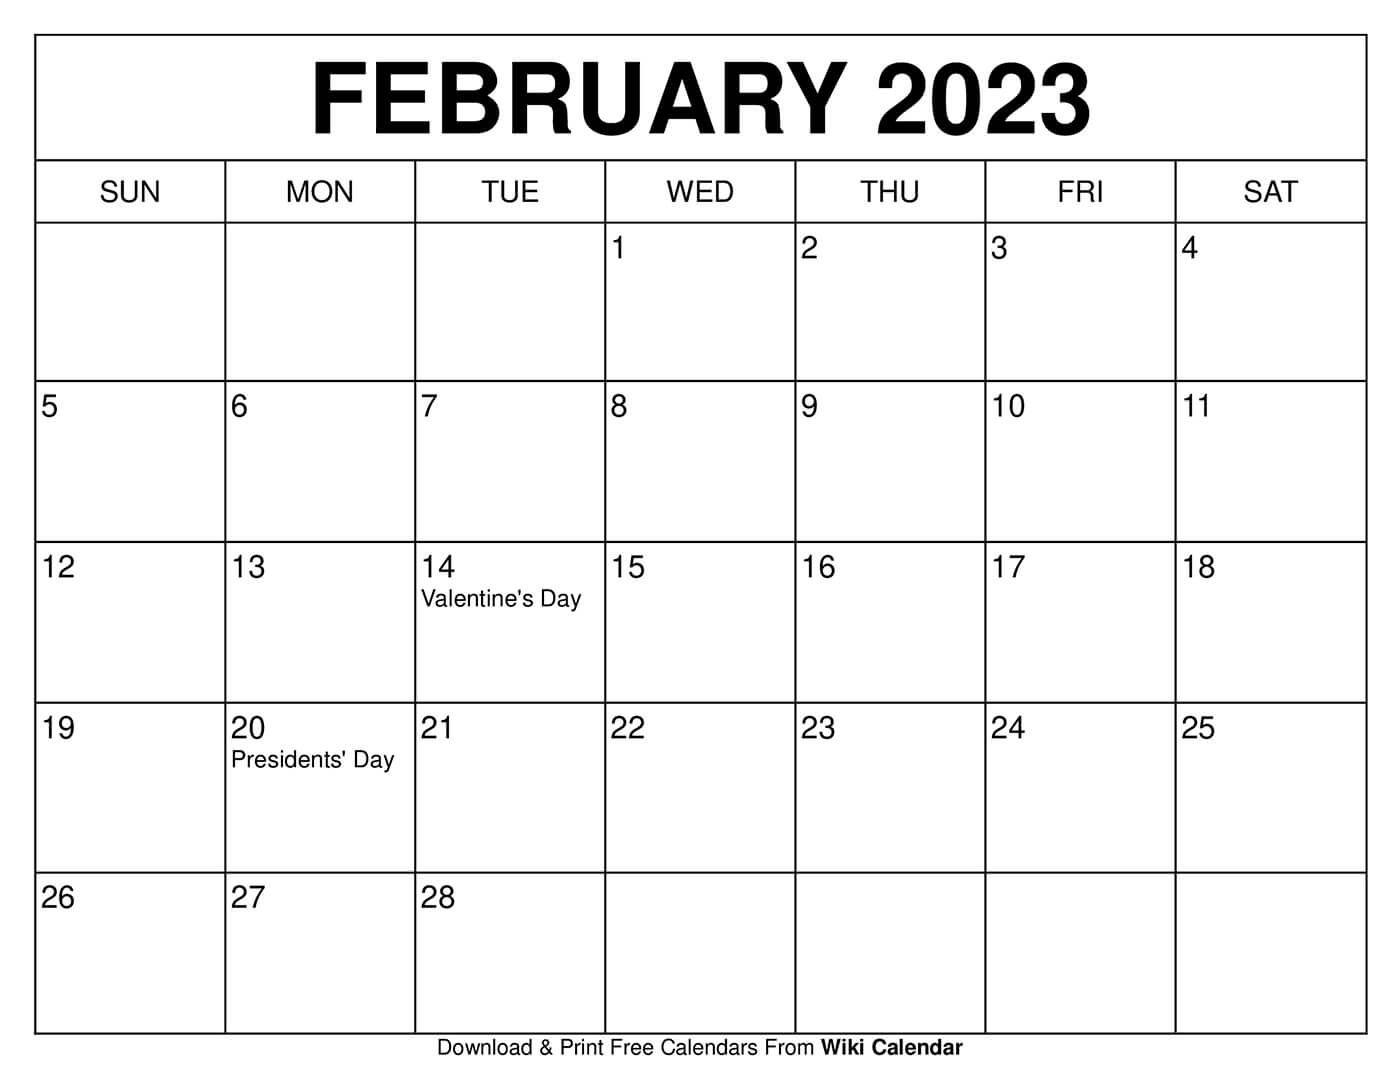 calendar-for-feb-2023-get-calendar-2023-update